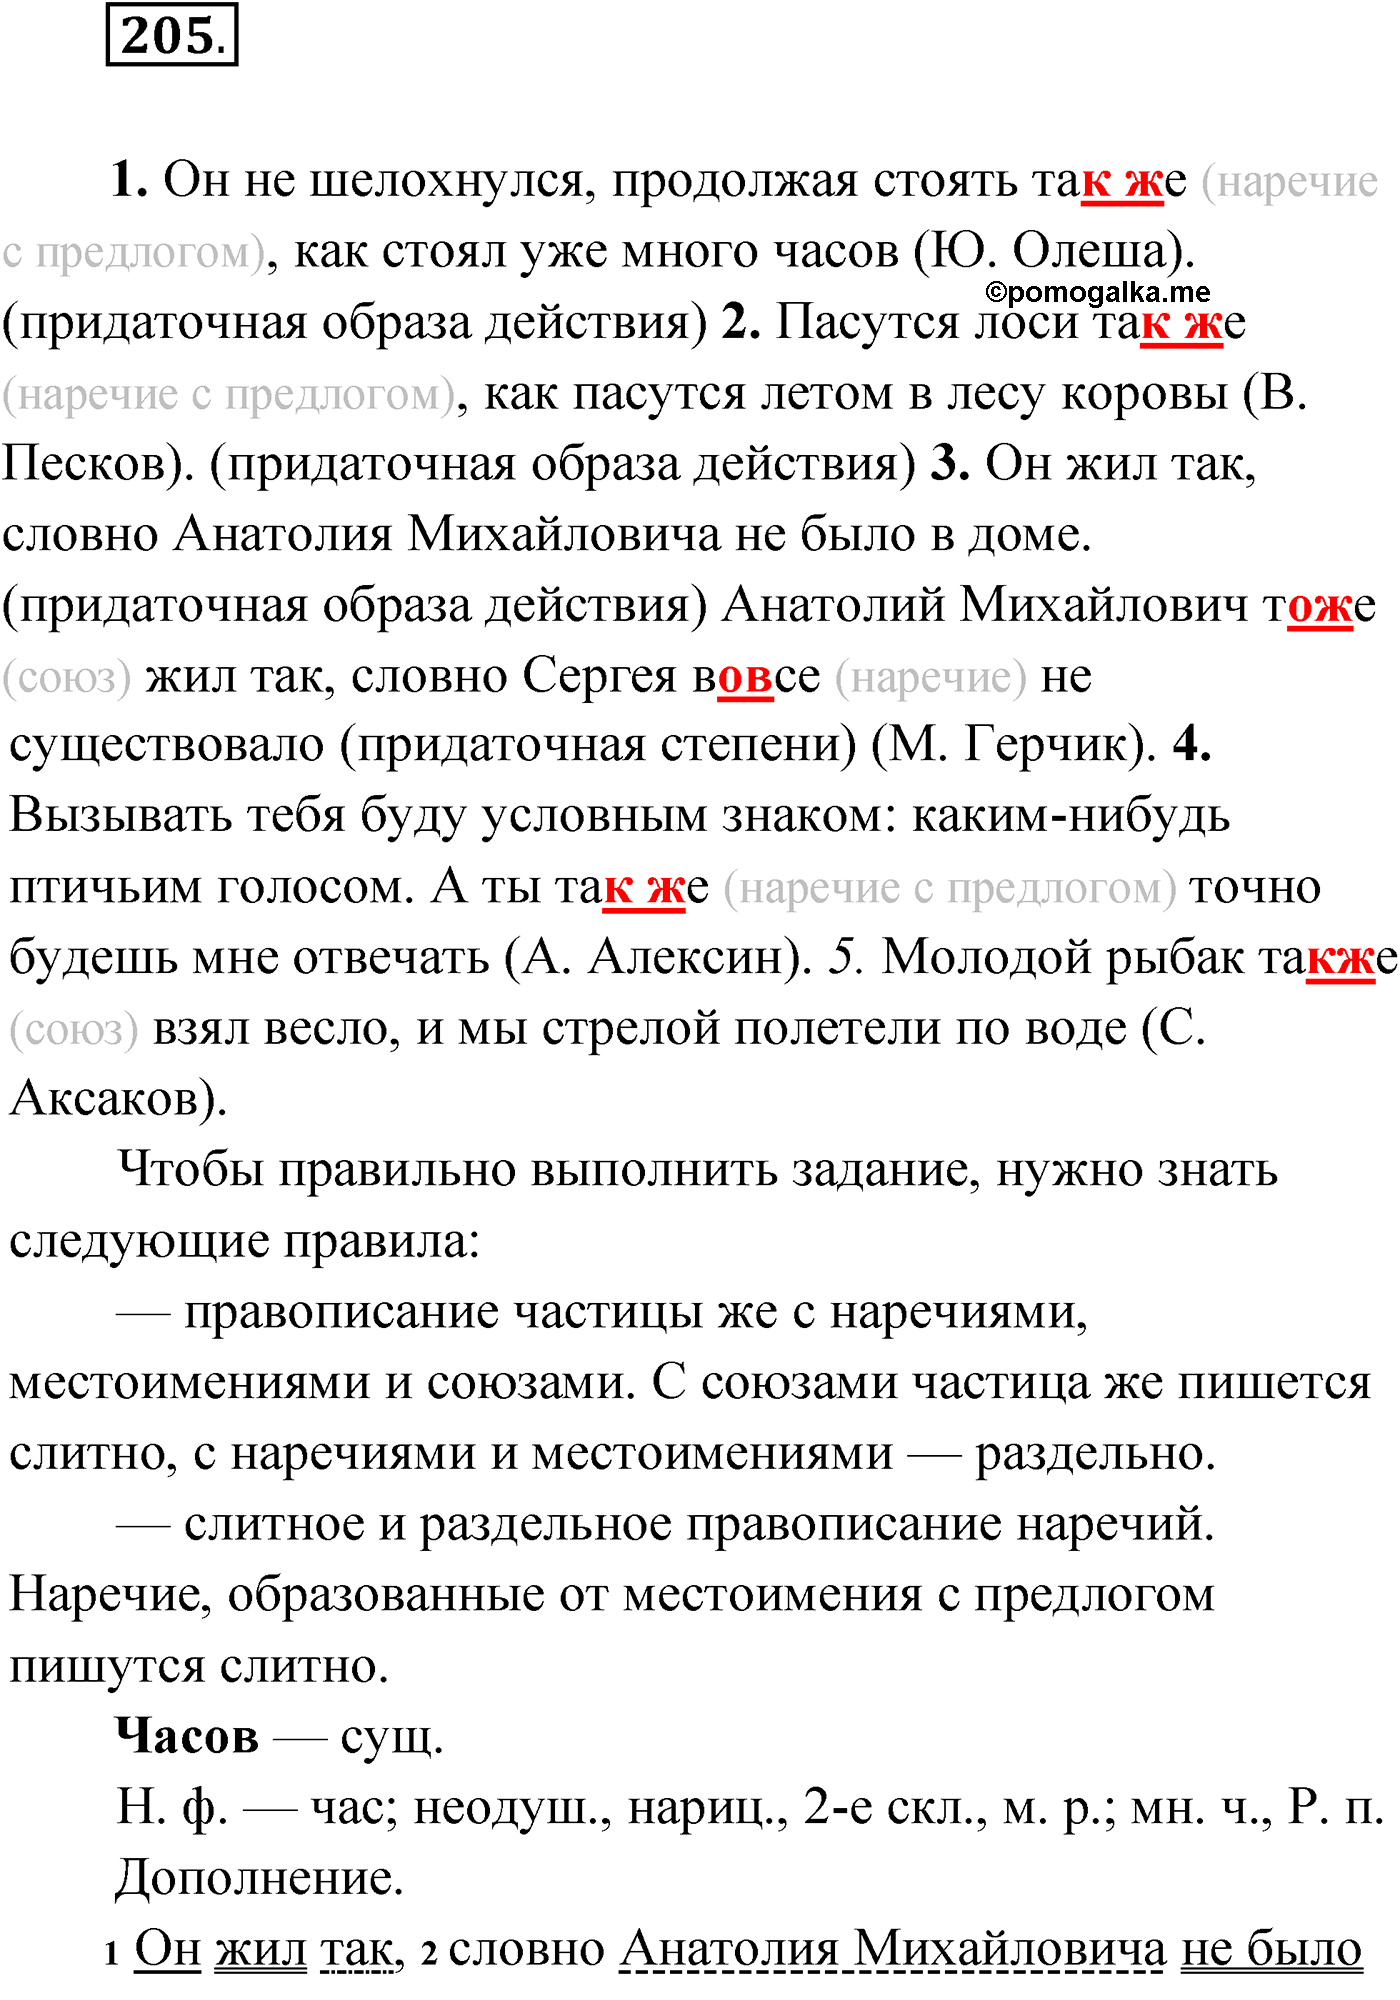 упражнение №205 русский язык 9 класс Мурина 2019 год